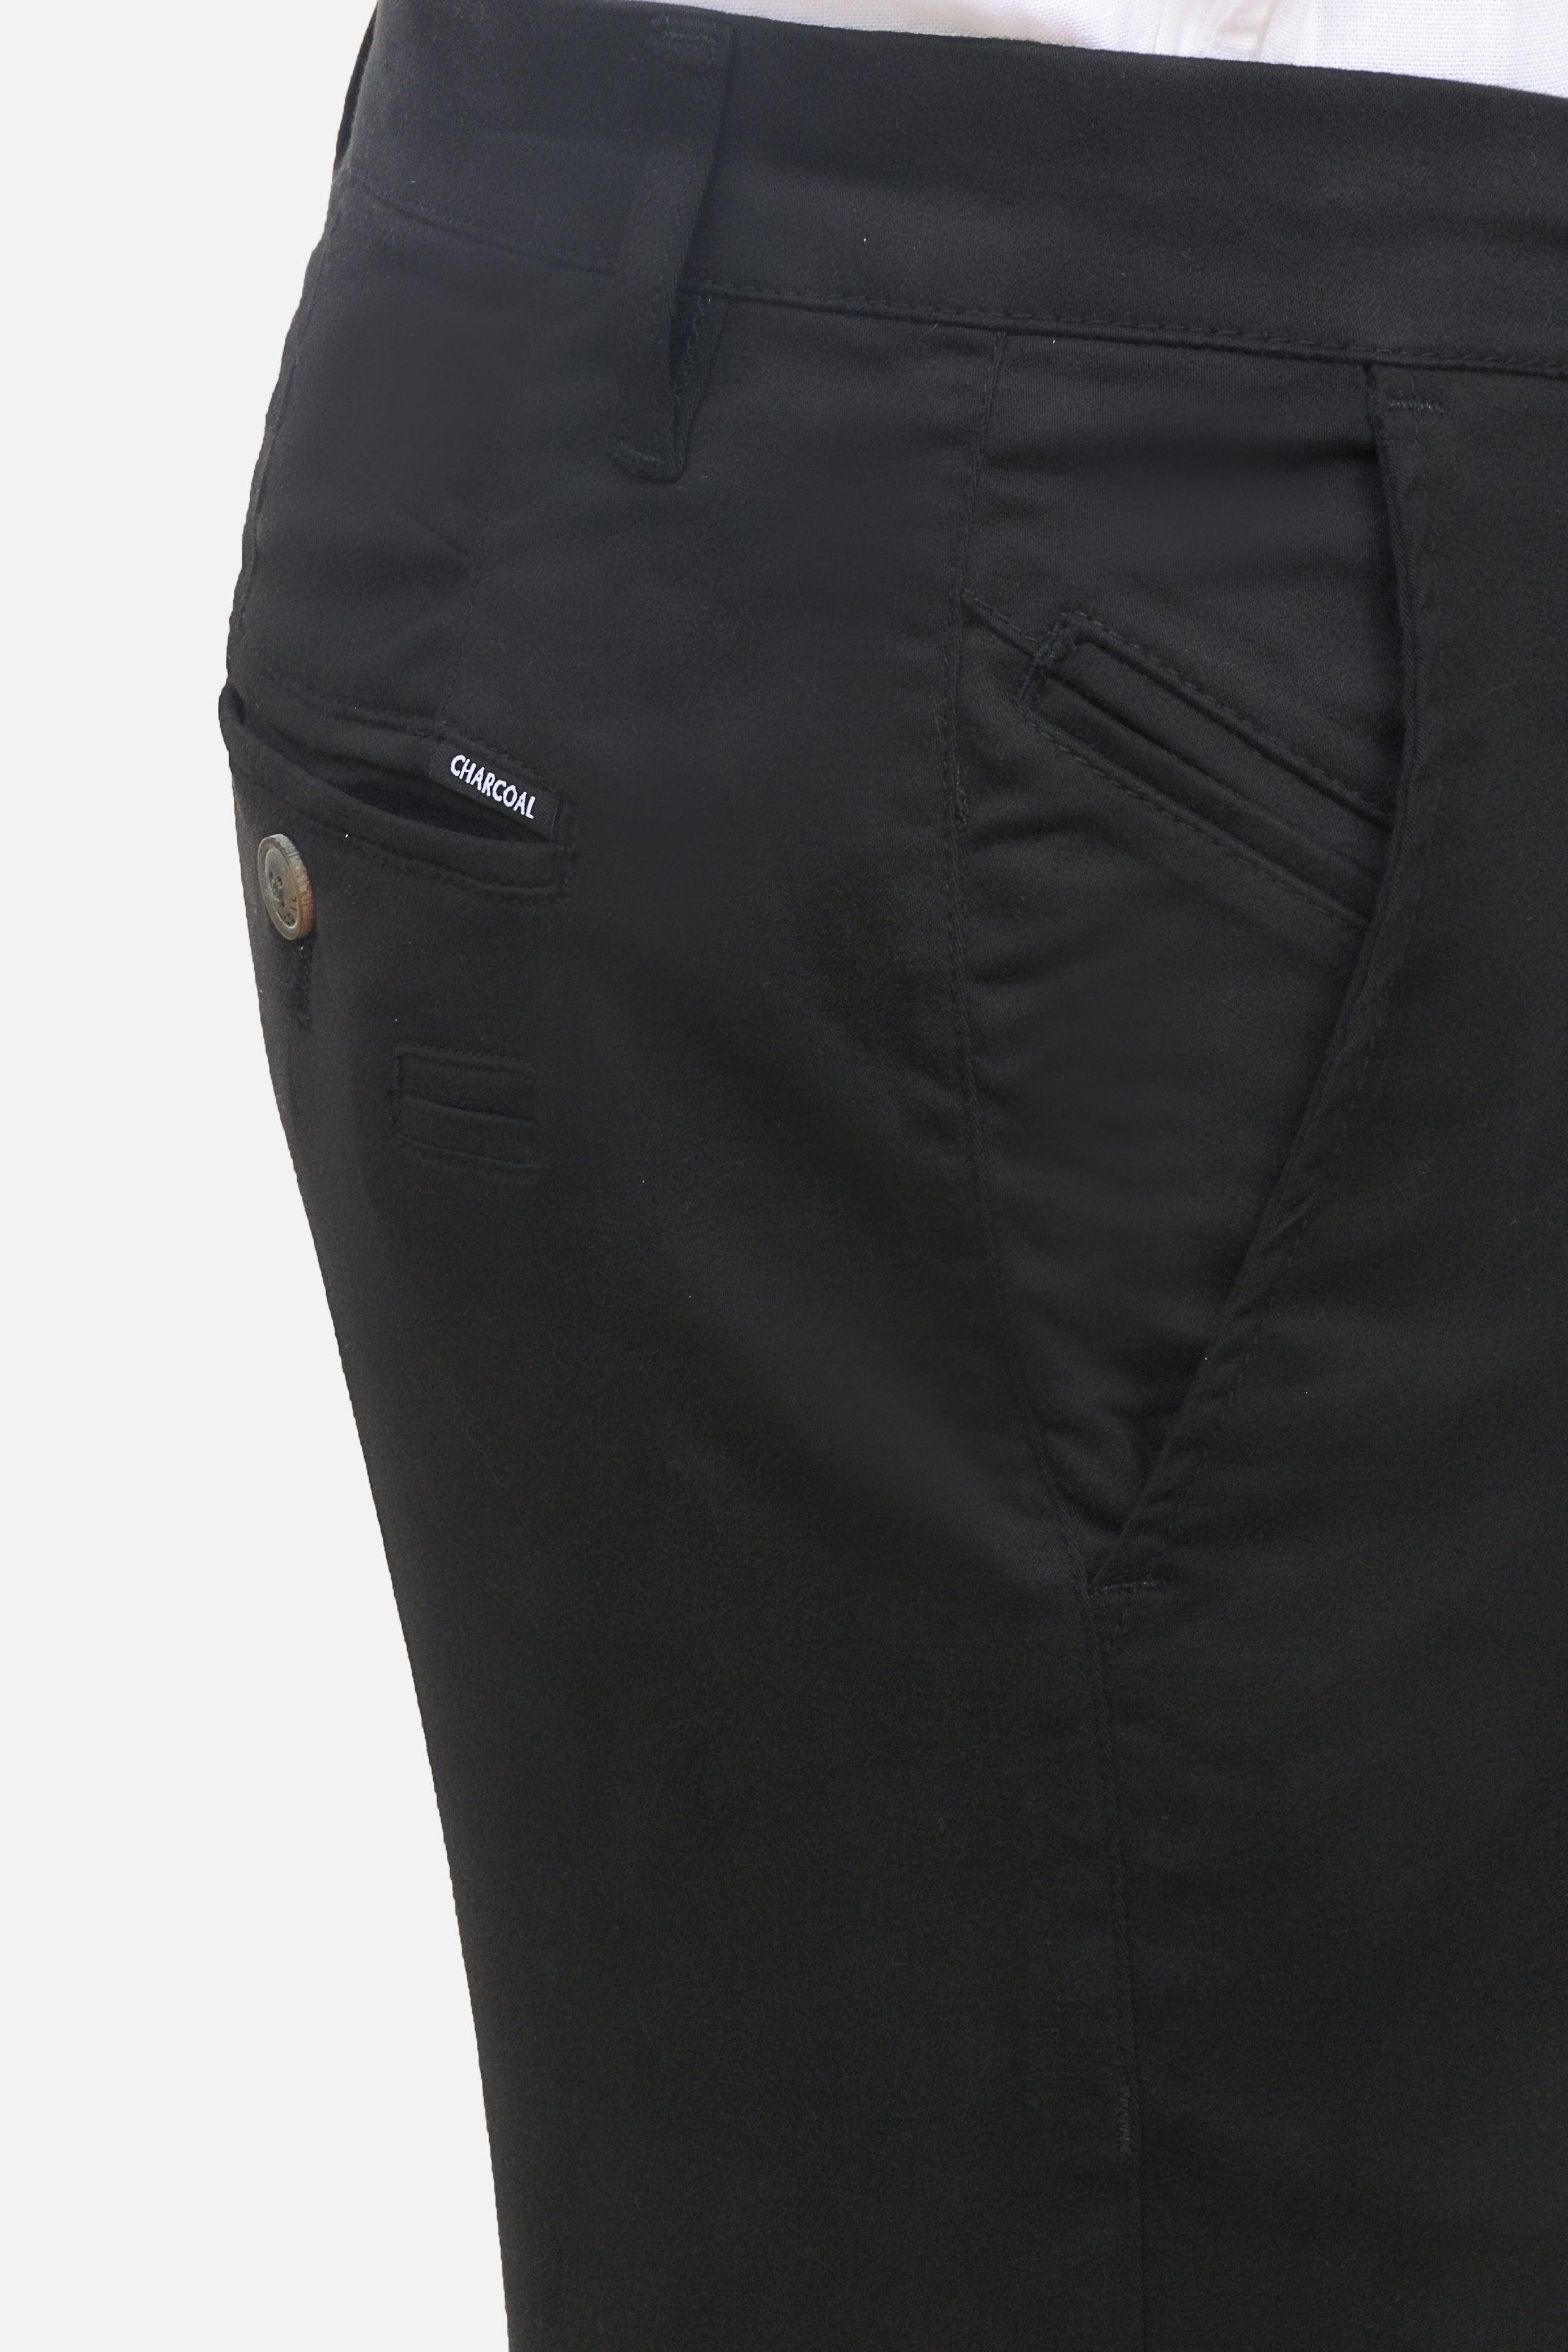 CASUAL PANT BLACK at Charcoal Clothing